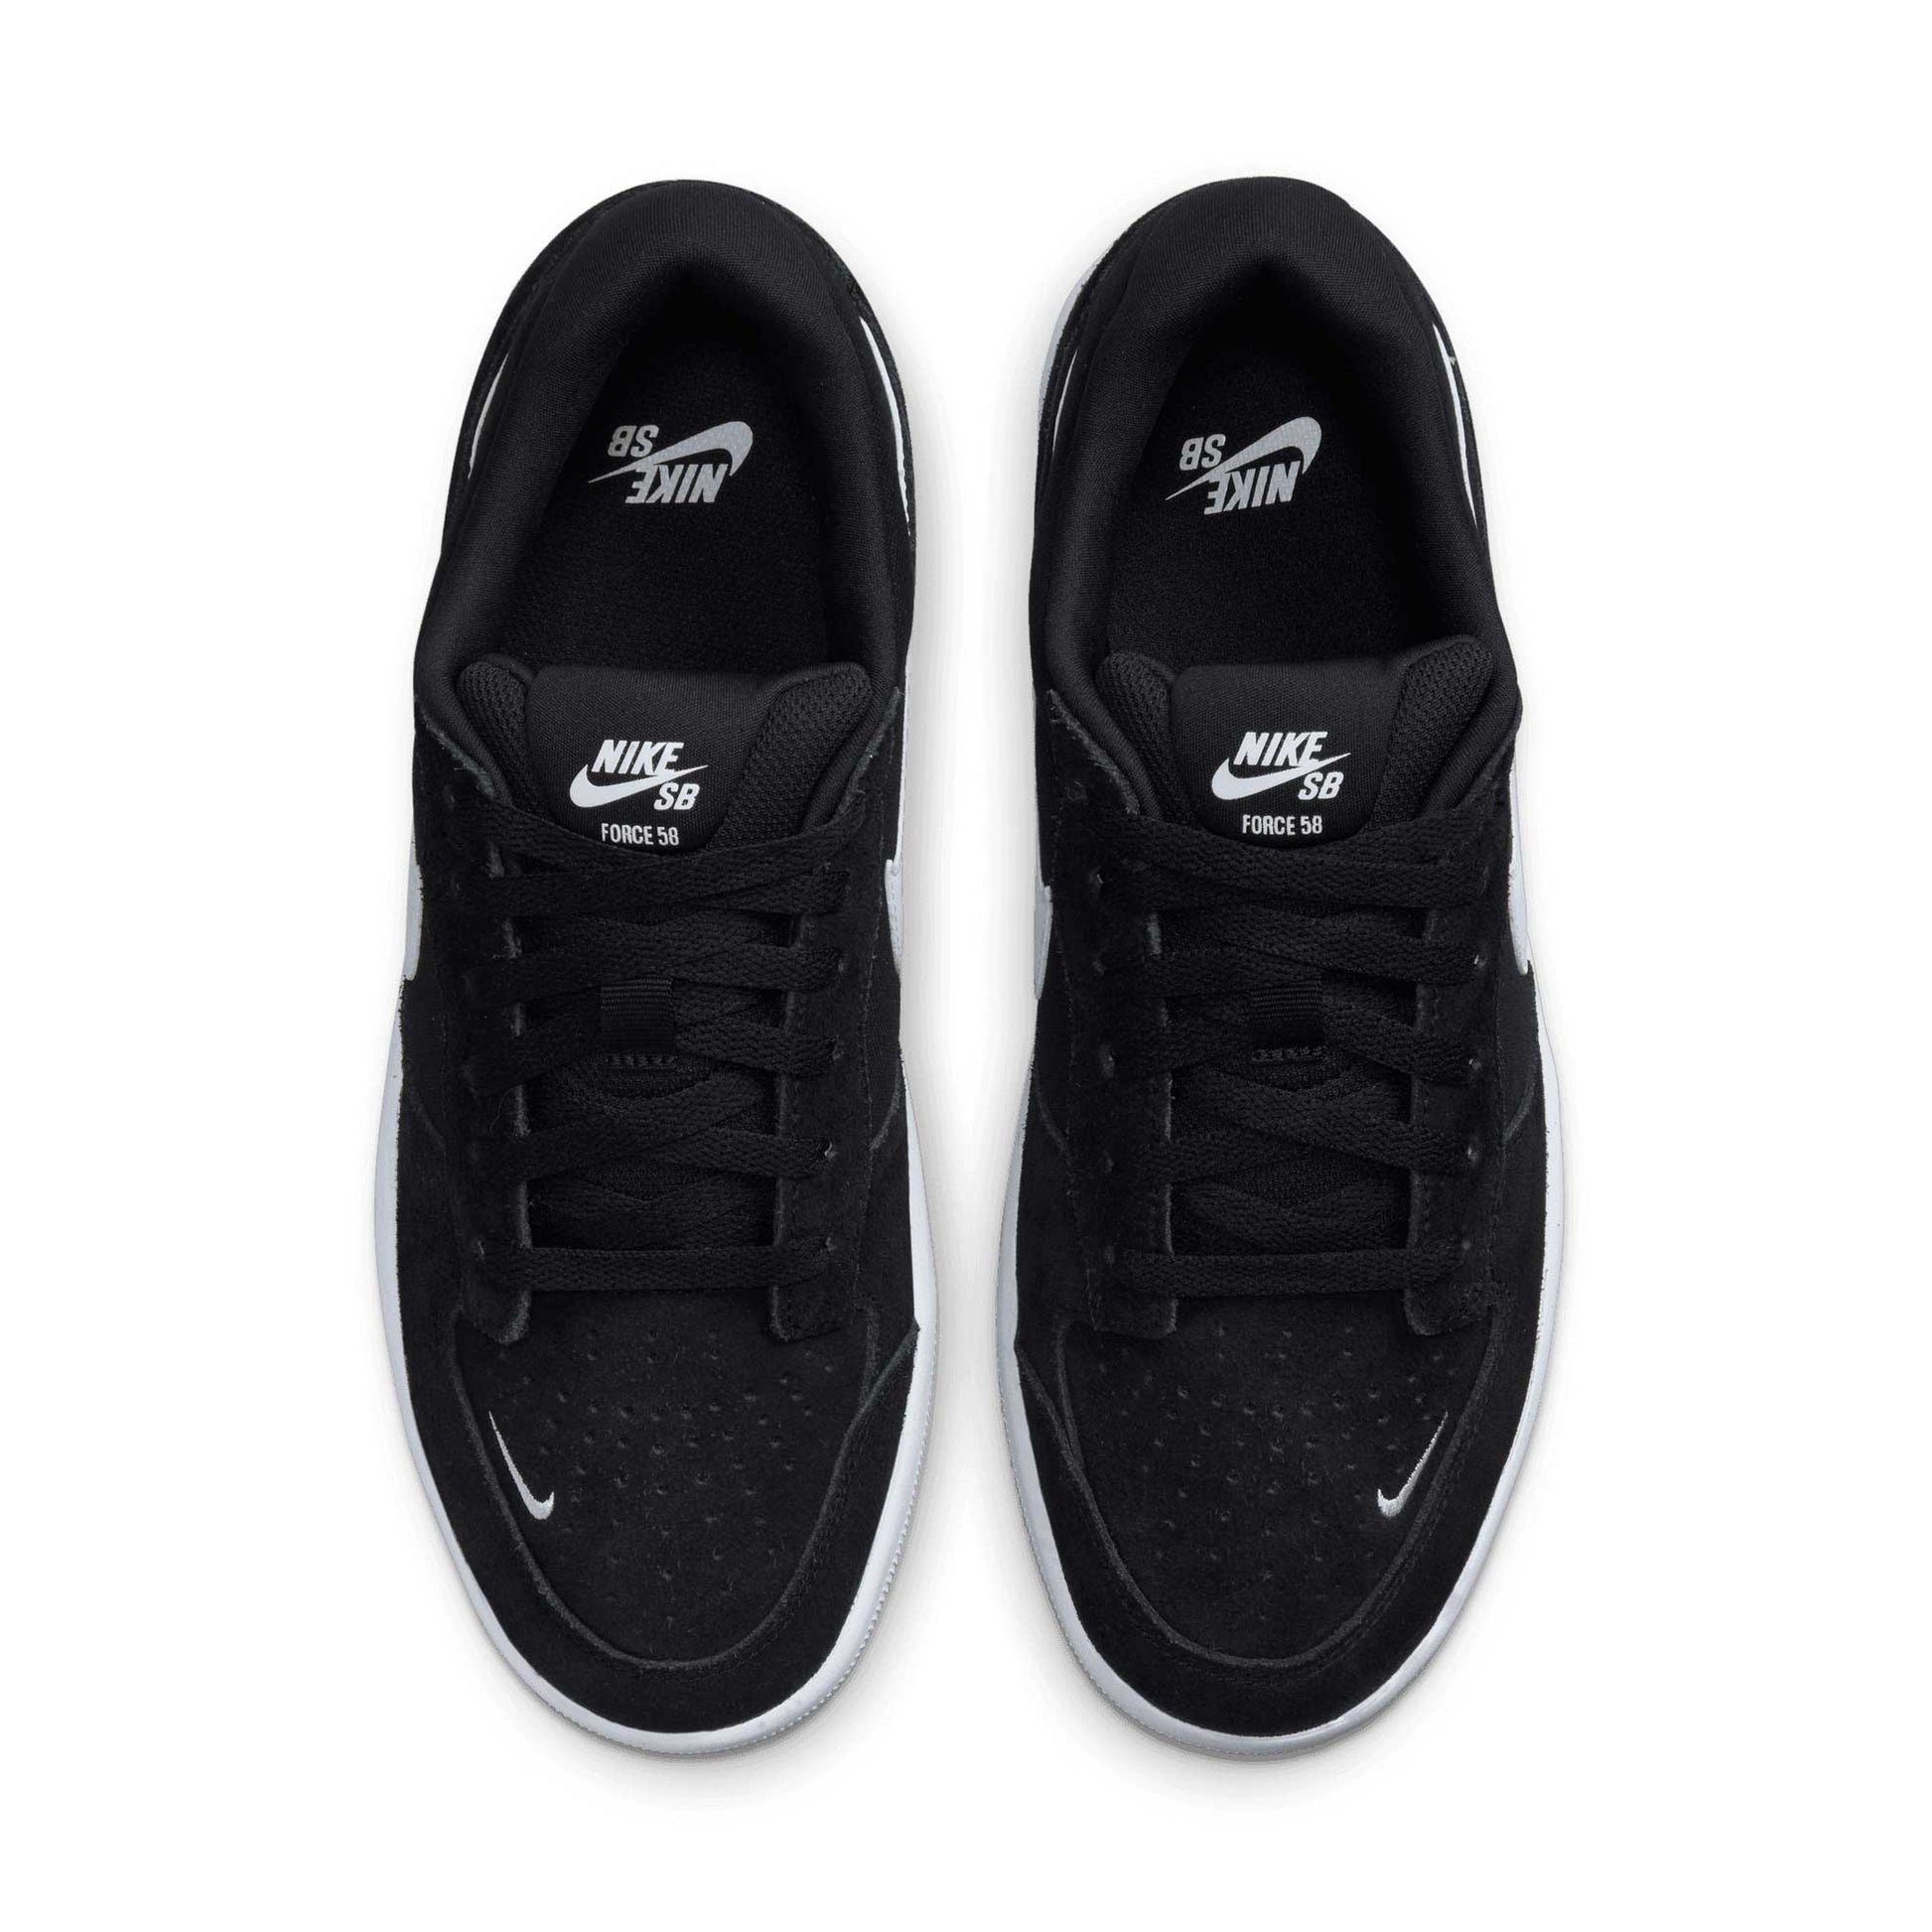 Nike SB Force 58, black/white-black - Tiki Room Skateboards - 5